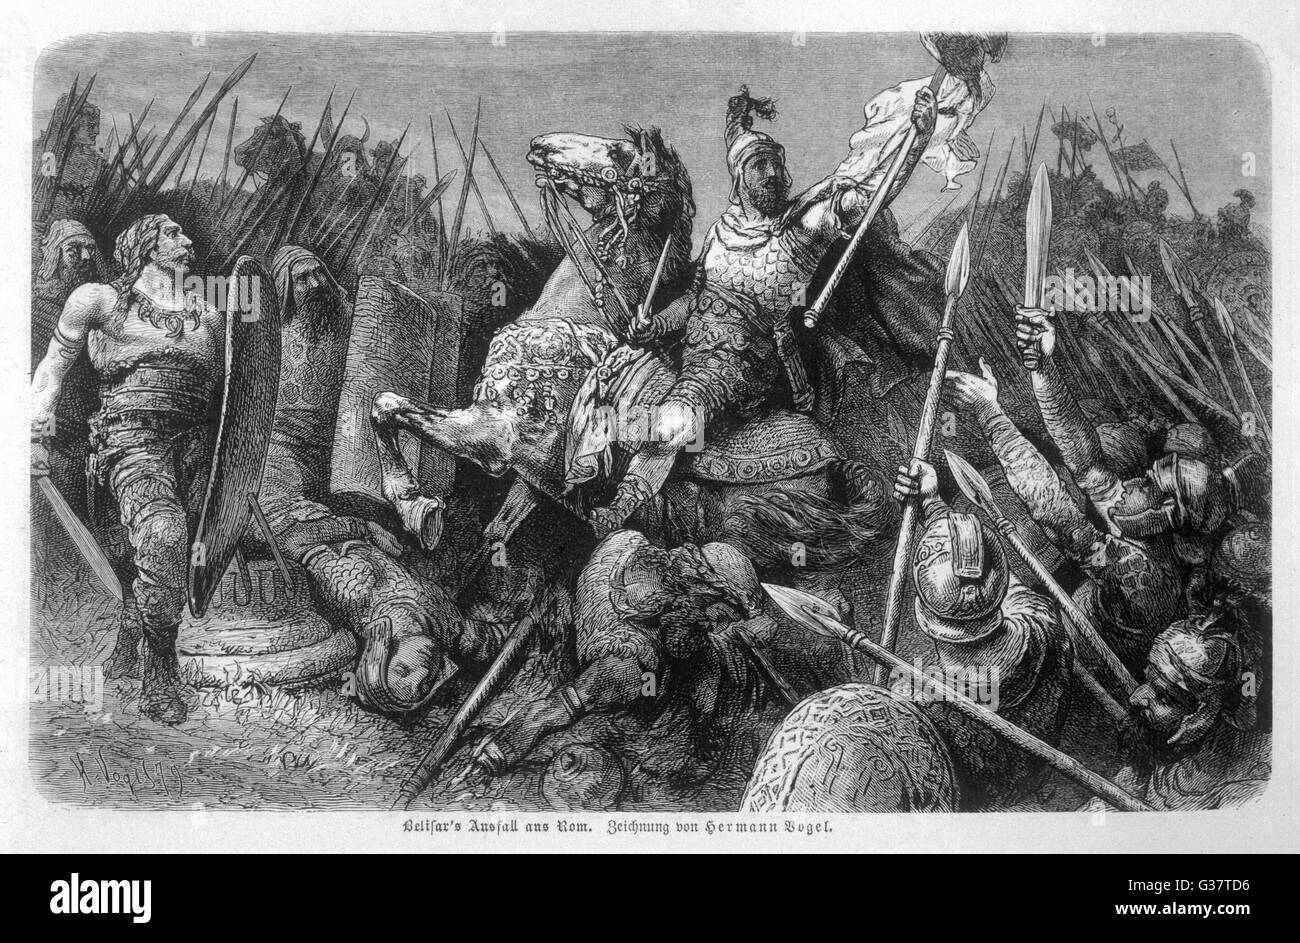 Byzantinischen general BELISAR, besiegte die Vandalen, Ostgoten gedämpft und erobert Sizilien, nimmt Rom Datum: 536 Stockfoto